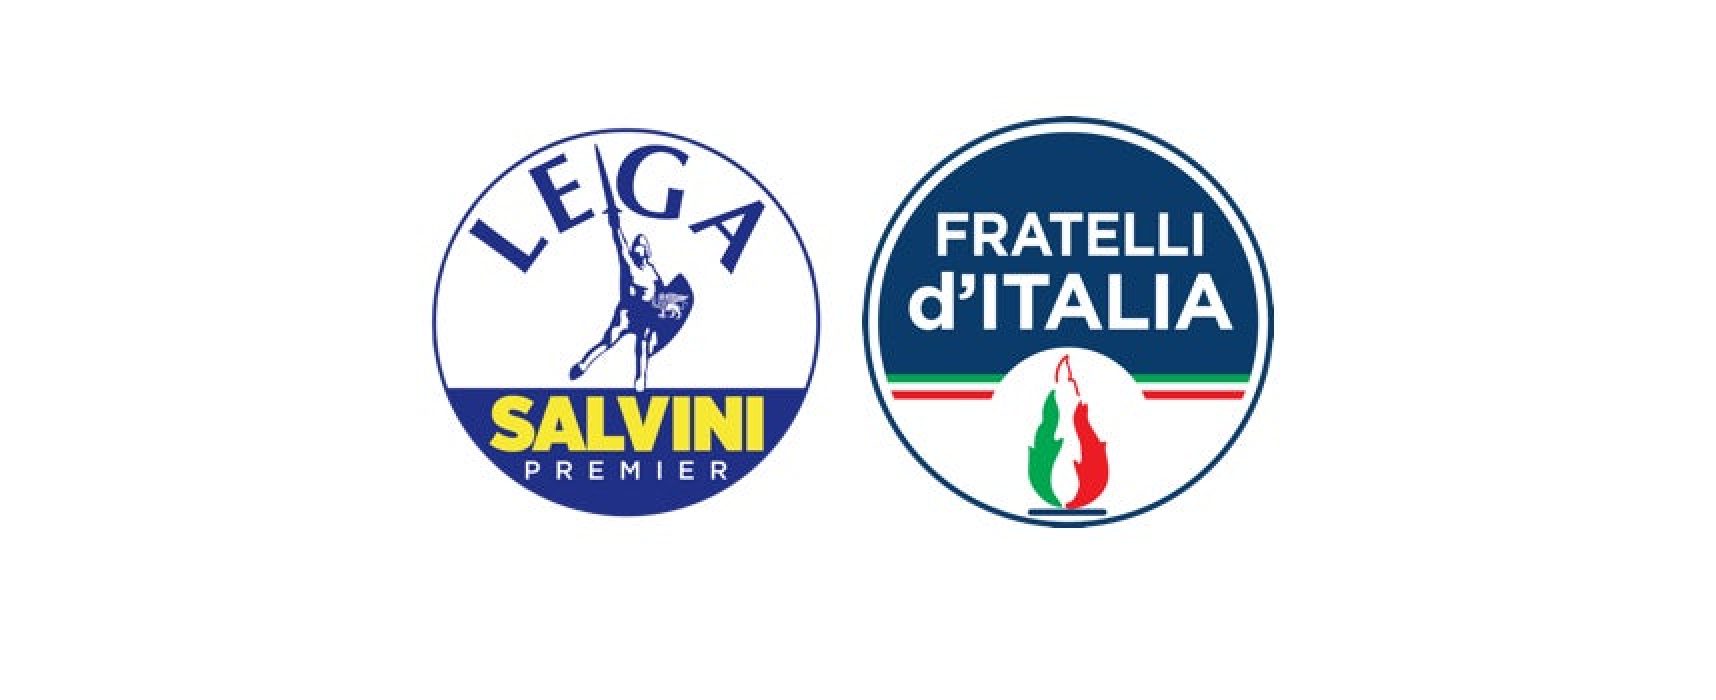 Lega e Fratelli d’Italia contro presenza Gobetti a Bisceglie: “Fuori politica dalle scuole”